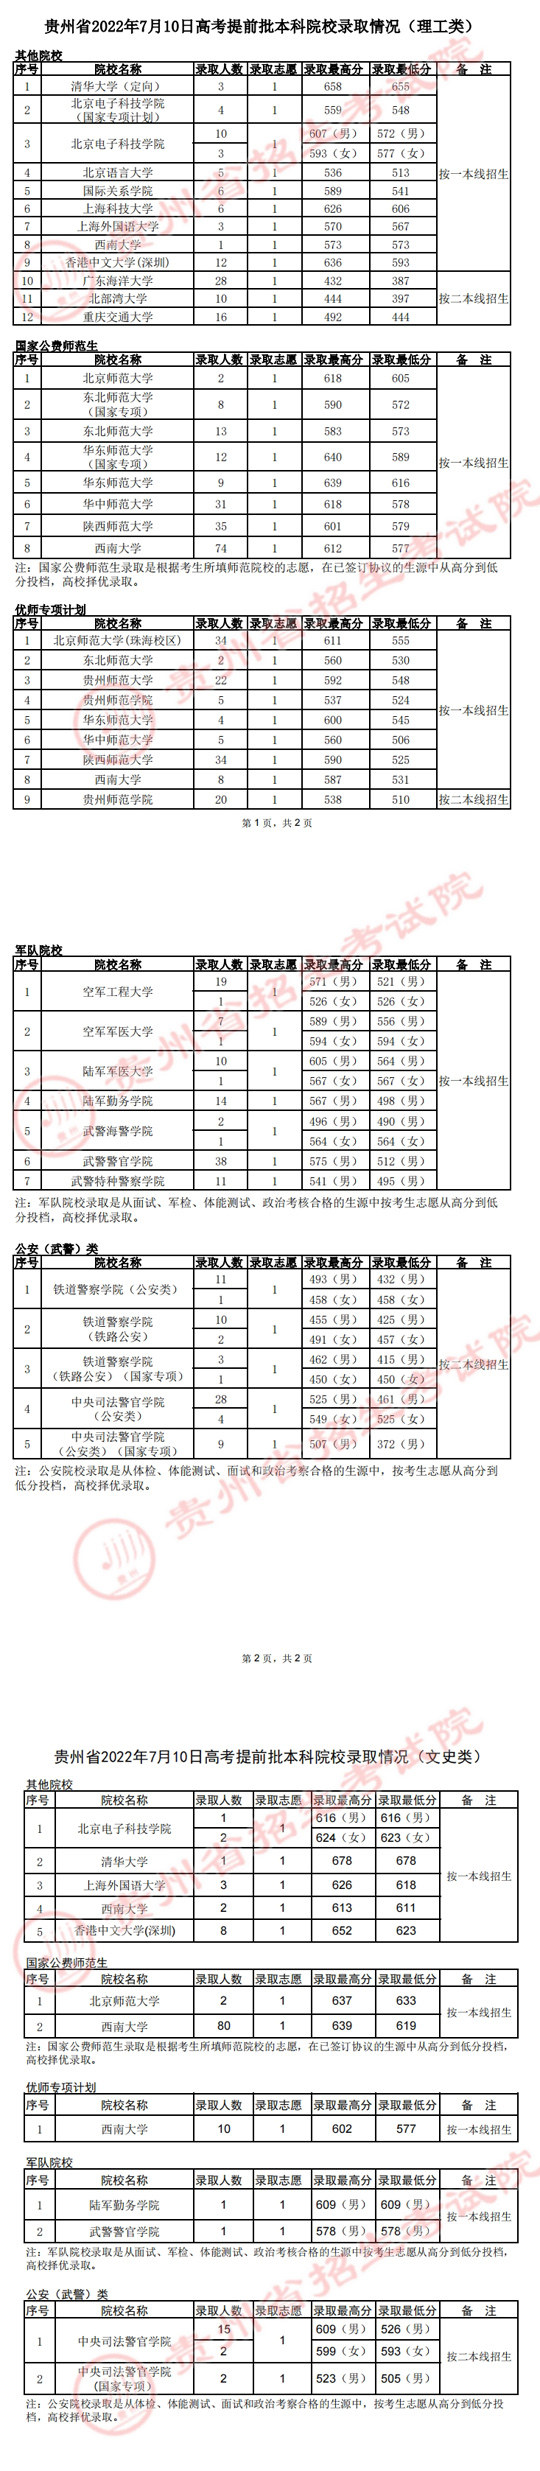 贵州：2022年7月10日高考提前批本科院校录取情况